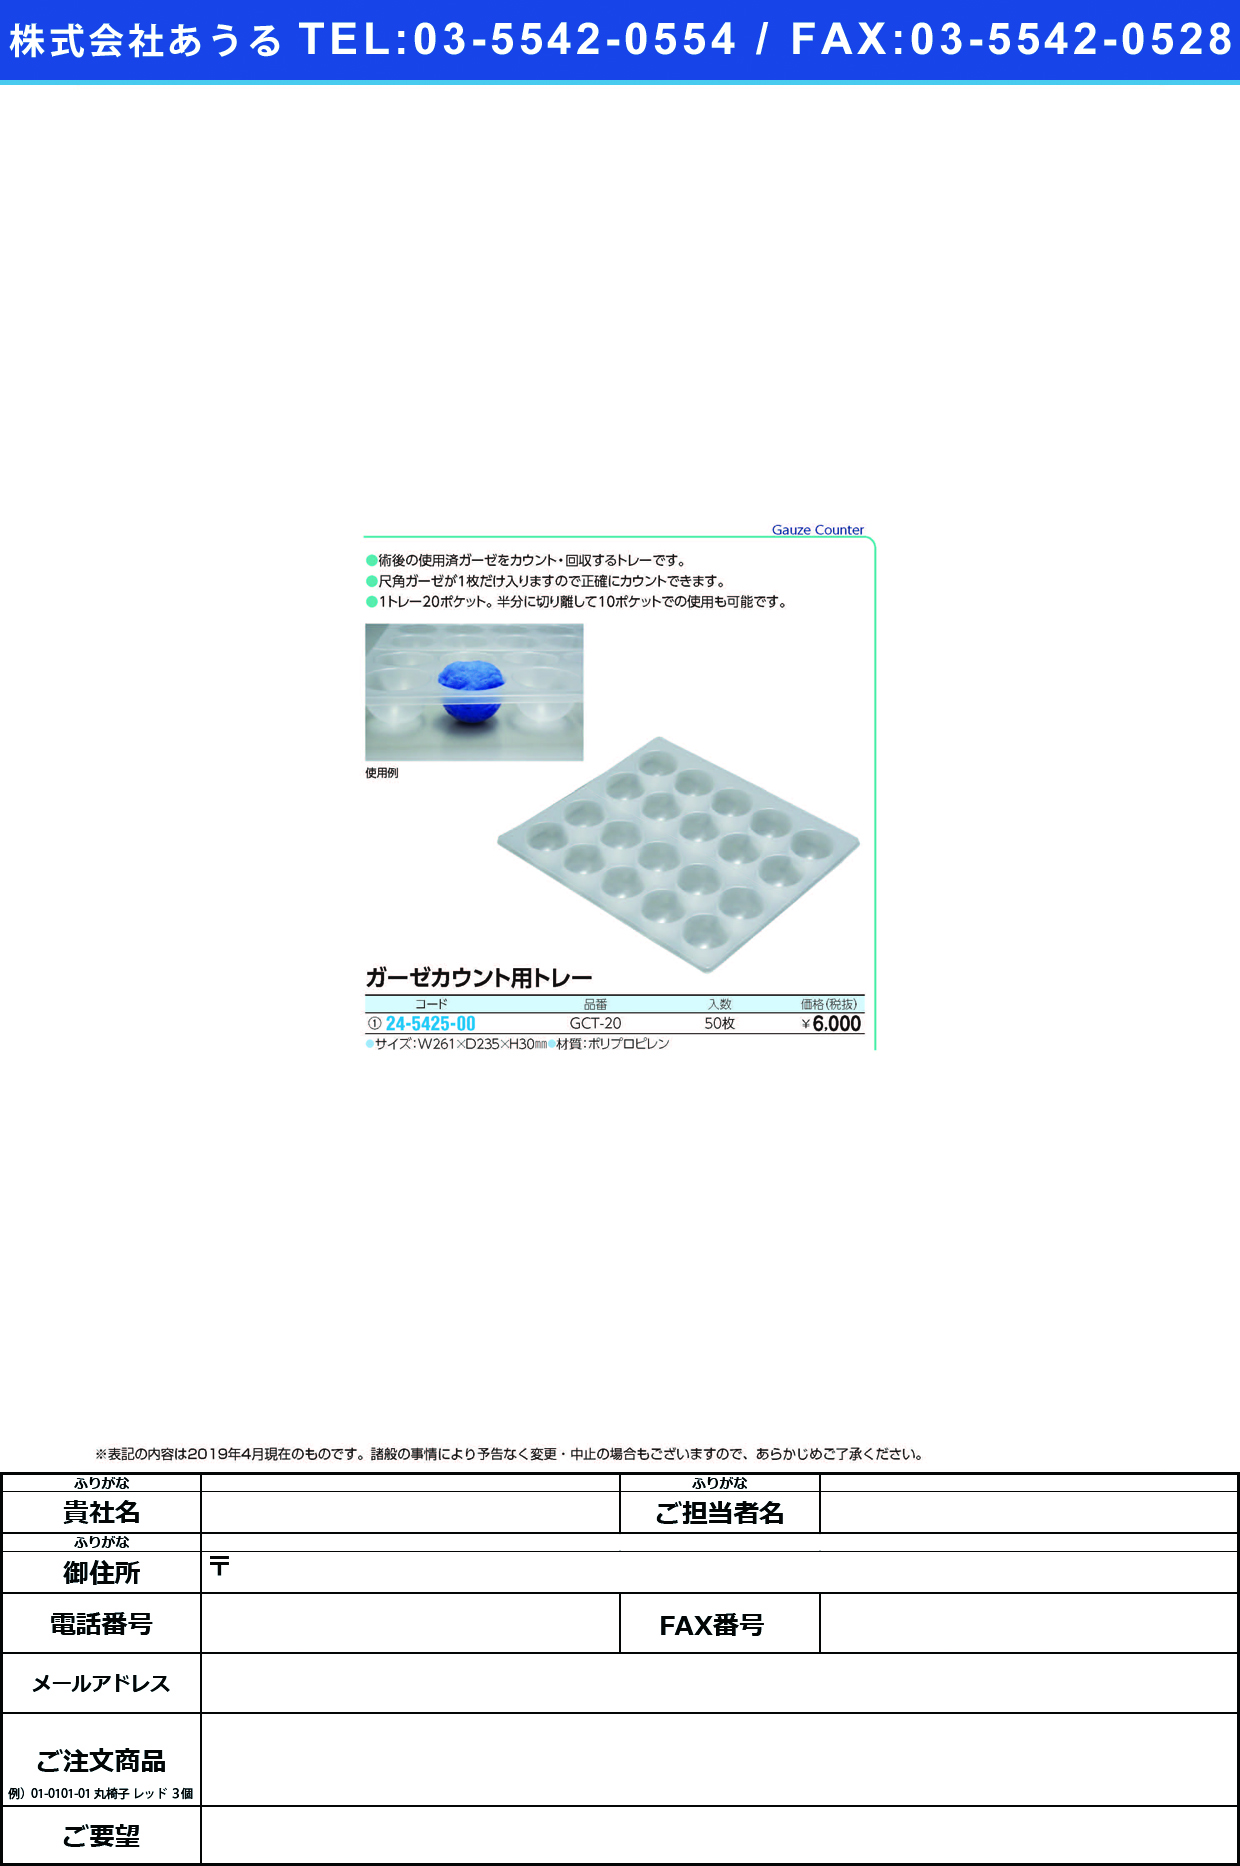 (24-5425-00)ガーゼカウント用トレー GCT-20(50ﾏｲｲﾘ) ｶﾞｰｾﾞｶｳﾝﾄﾖｳﾄﾚｰ【1箱単位】【2019年カタログ商品